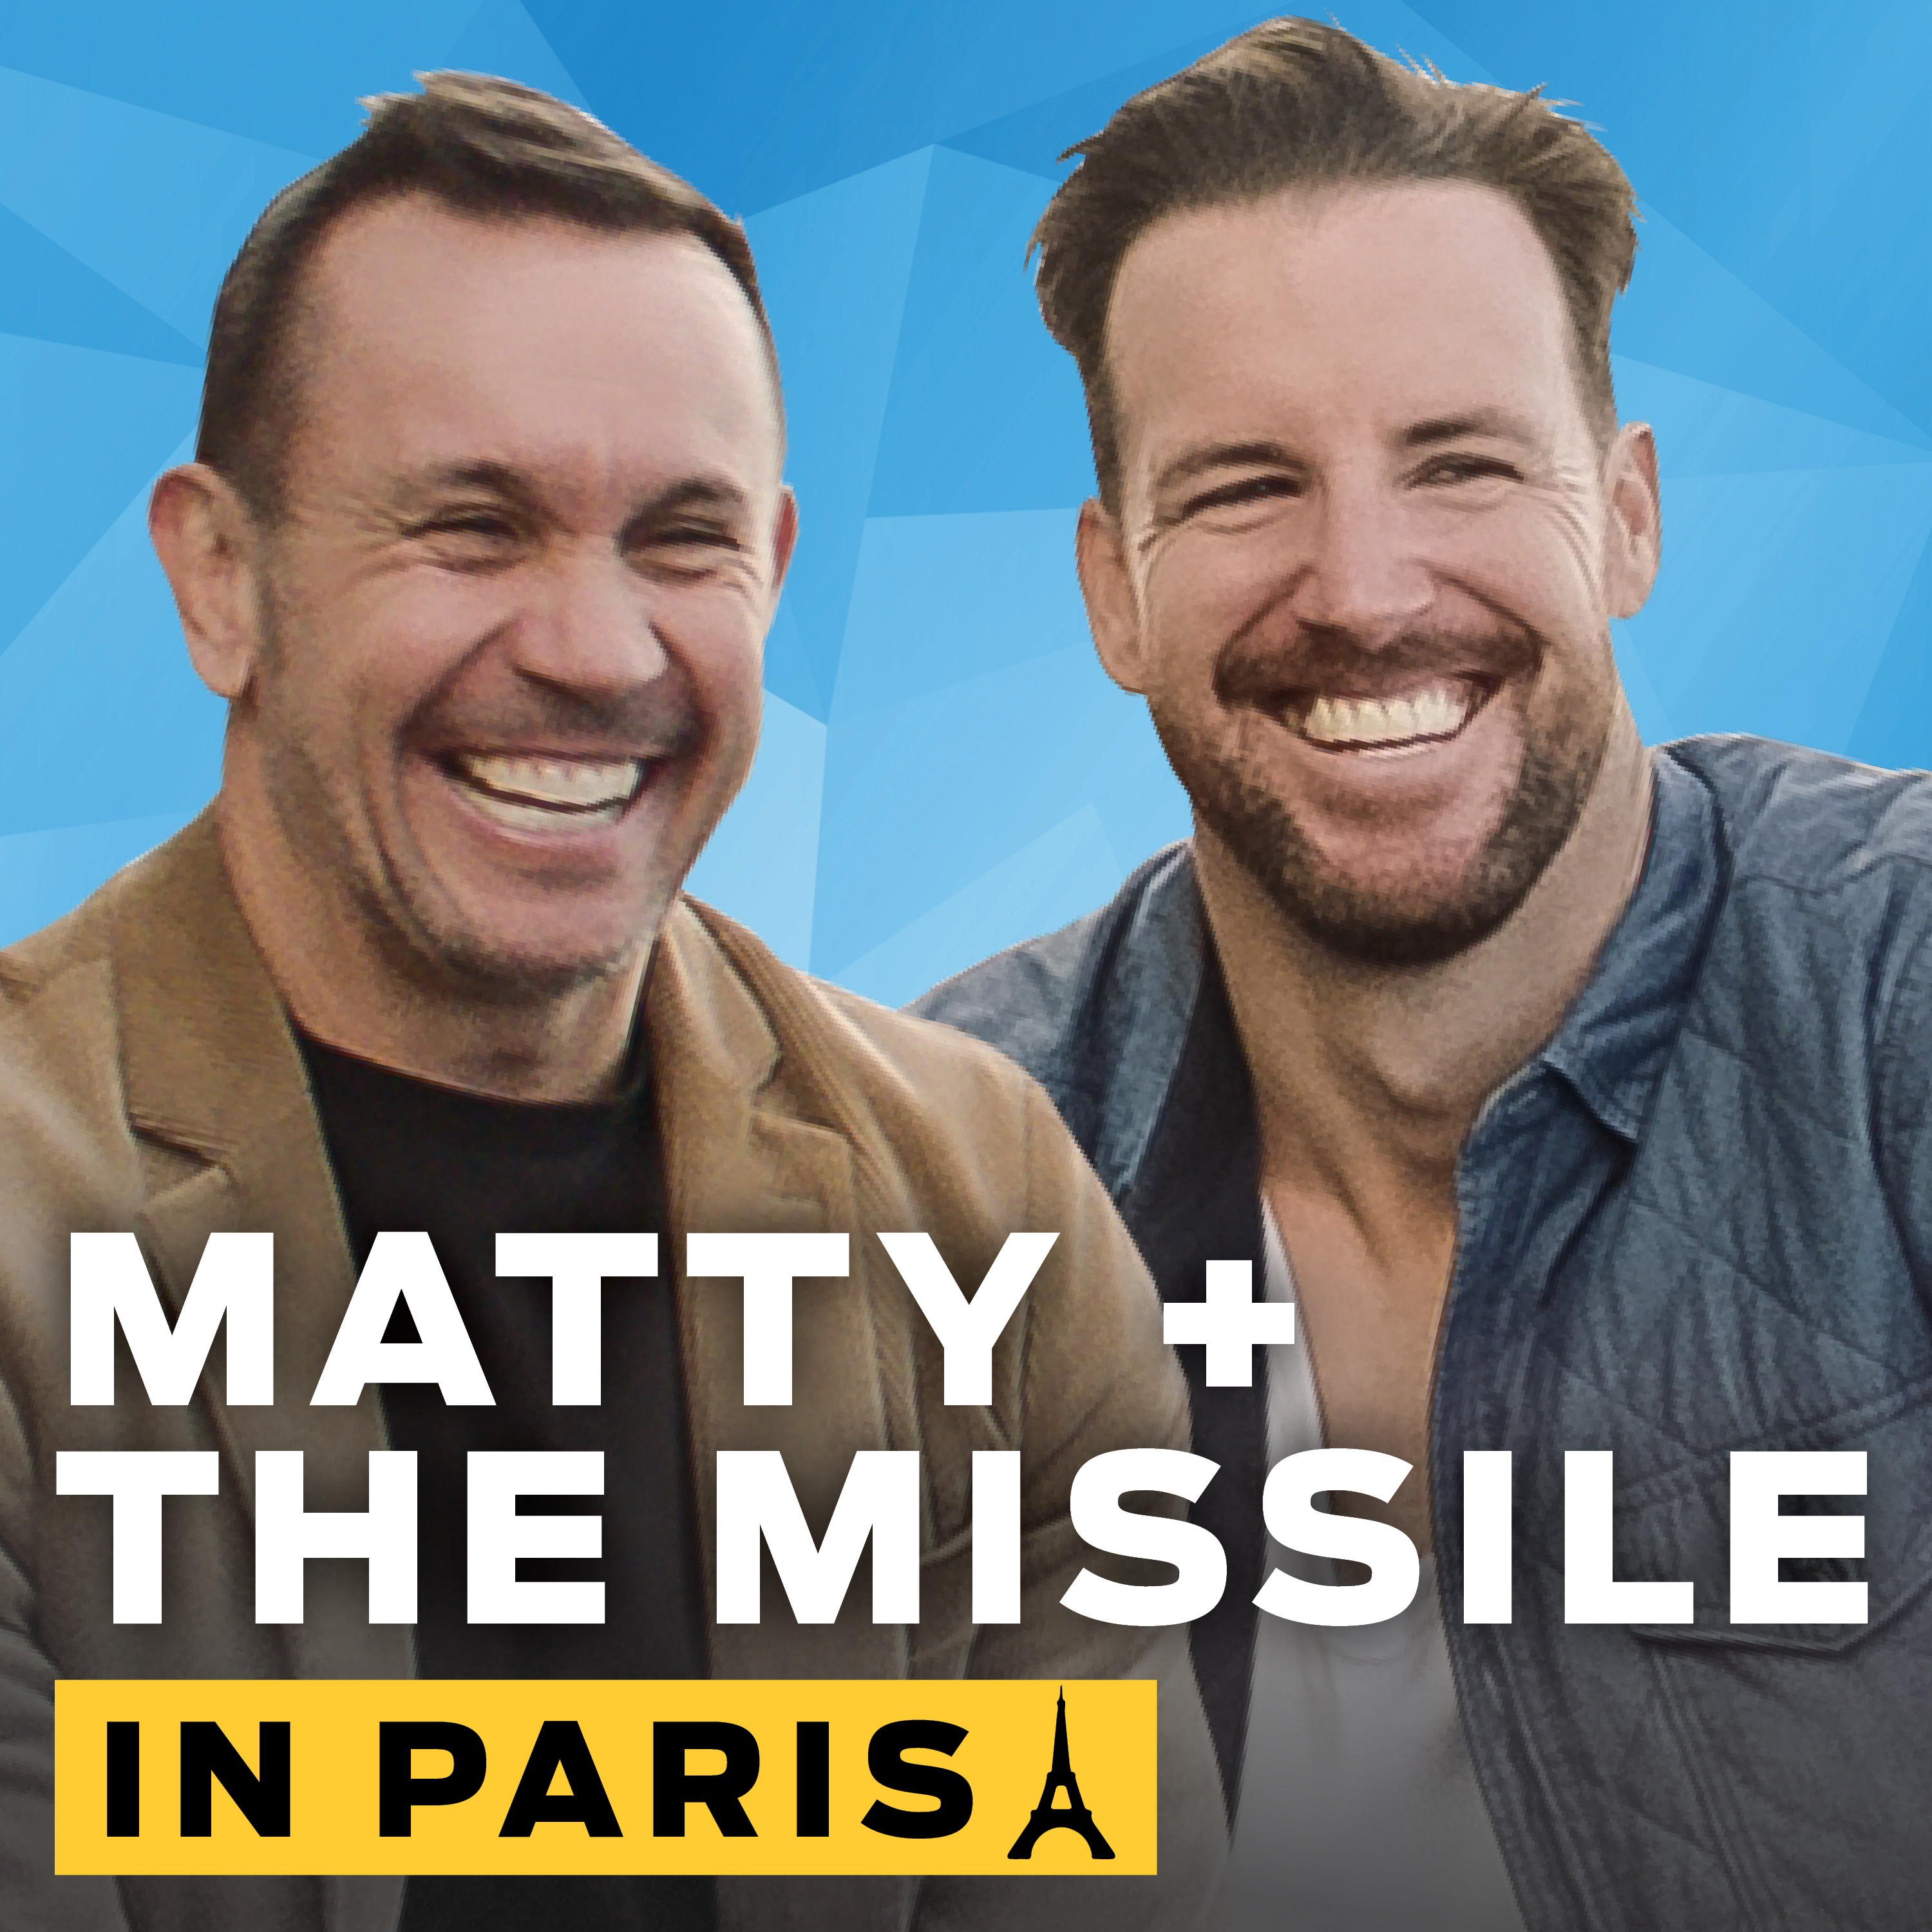 🇫🇷 Matty & the Missile in Paris: The Black Widow strikes again